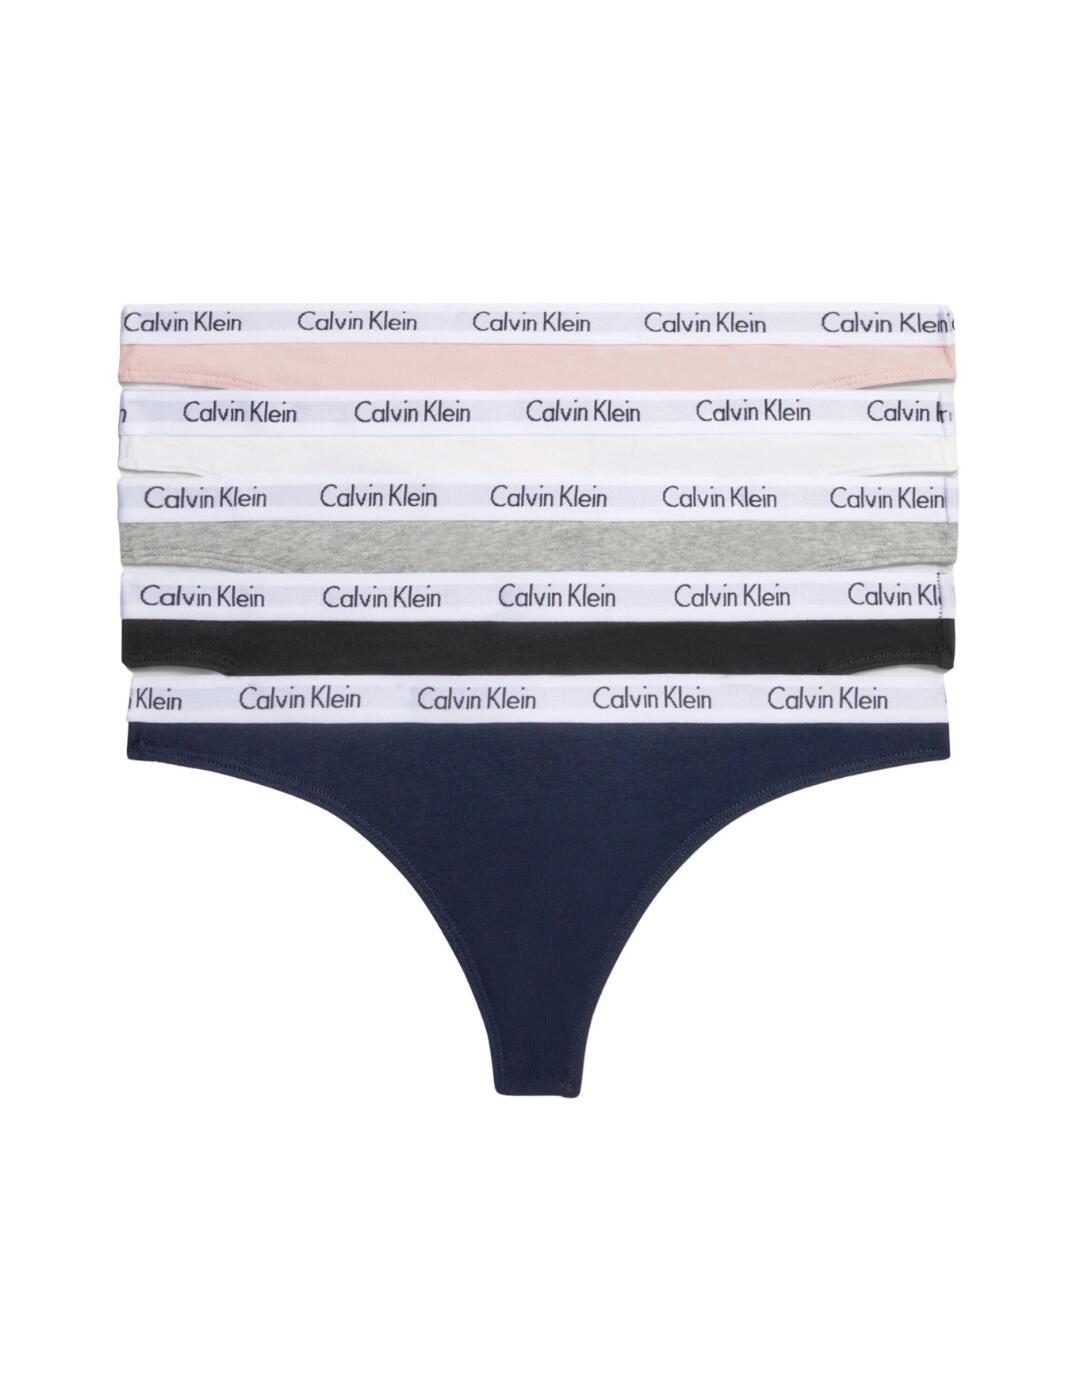 Calvin Klein Carousel Thongs 5 Pack - Belle Lingerie